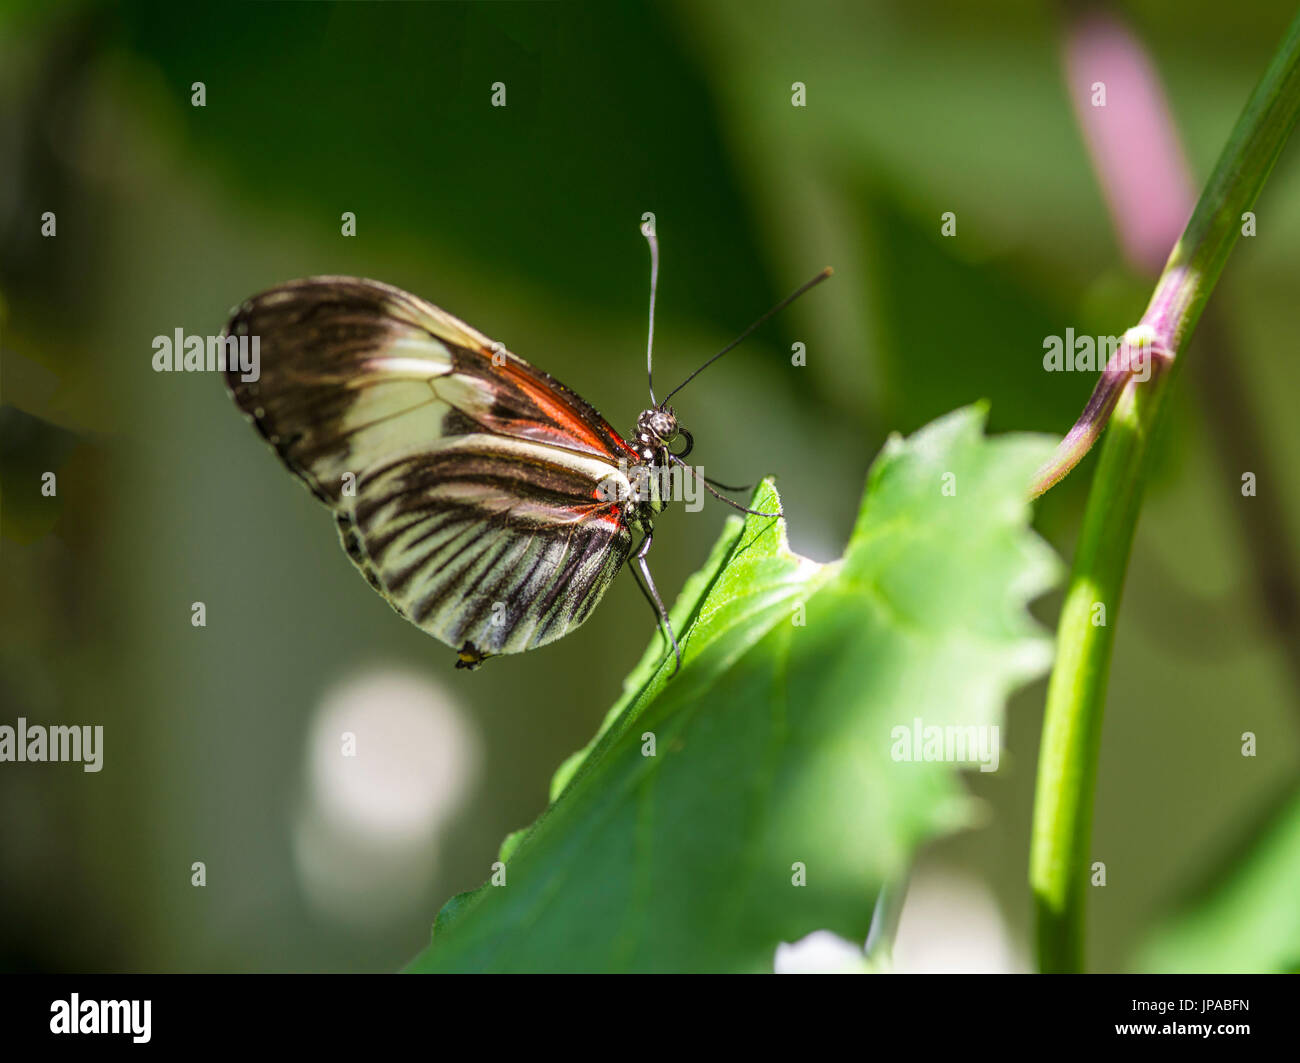 Piano Key Butterfly, Heliconius melpomene, Stock Photo